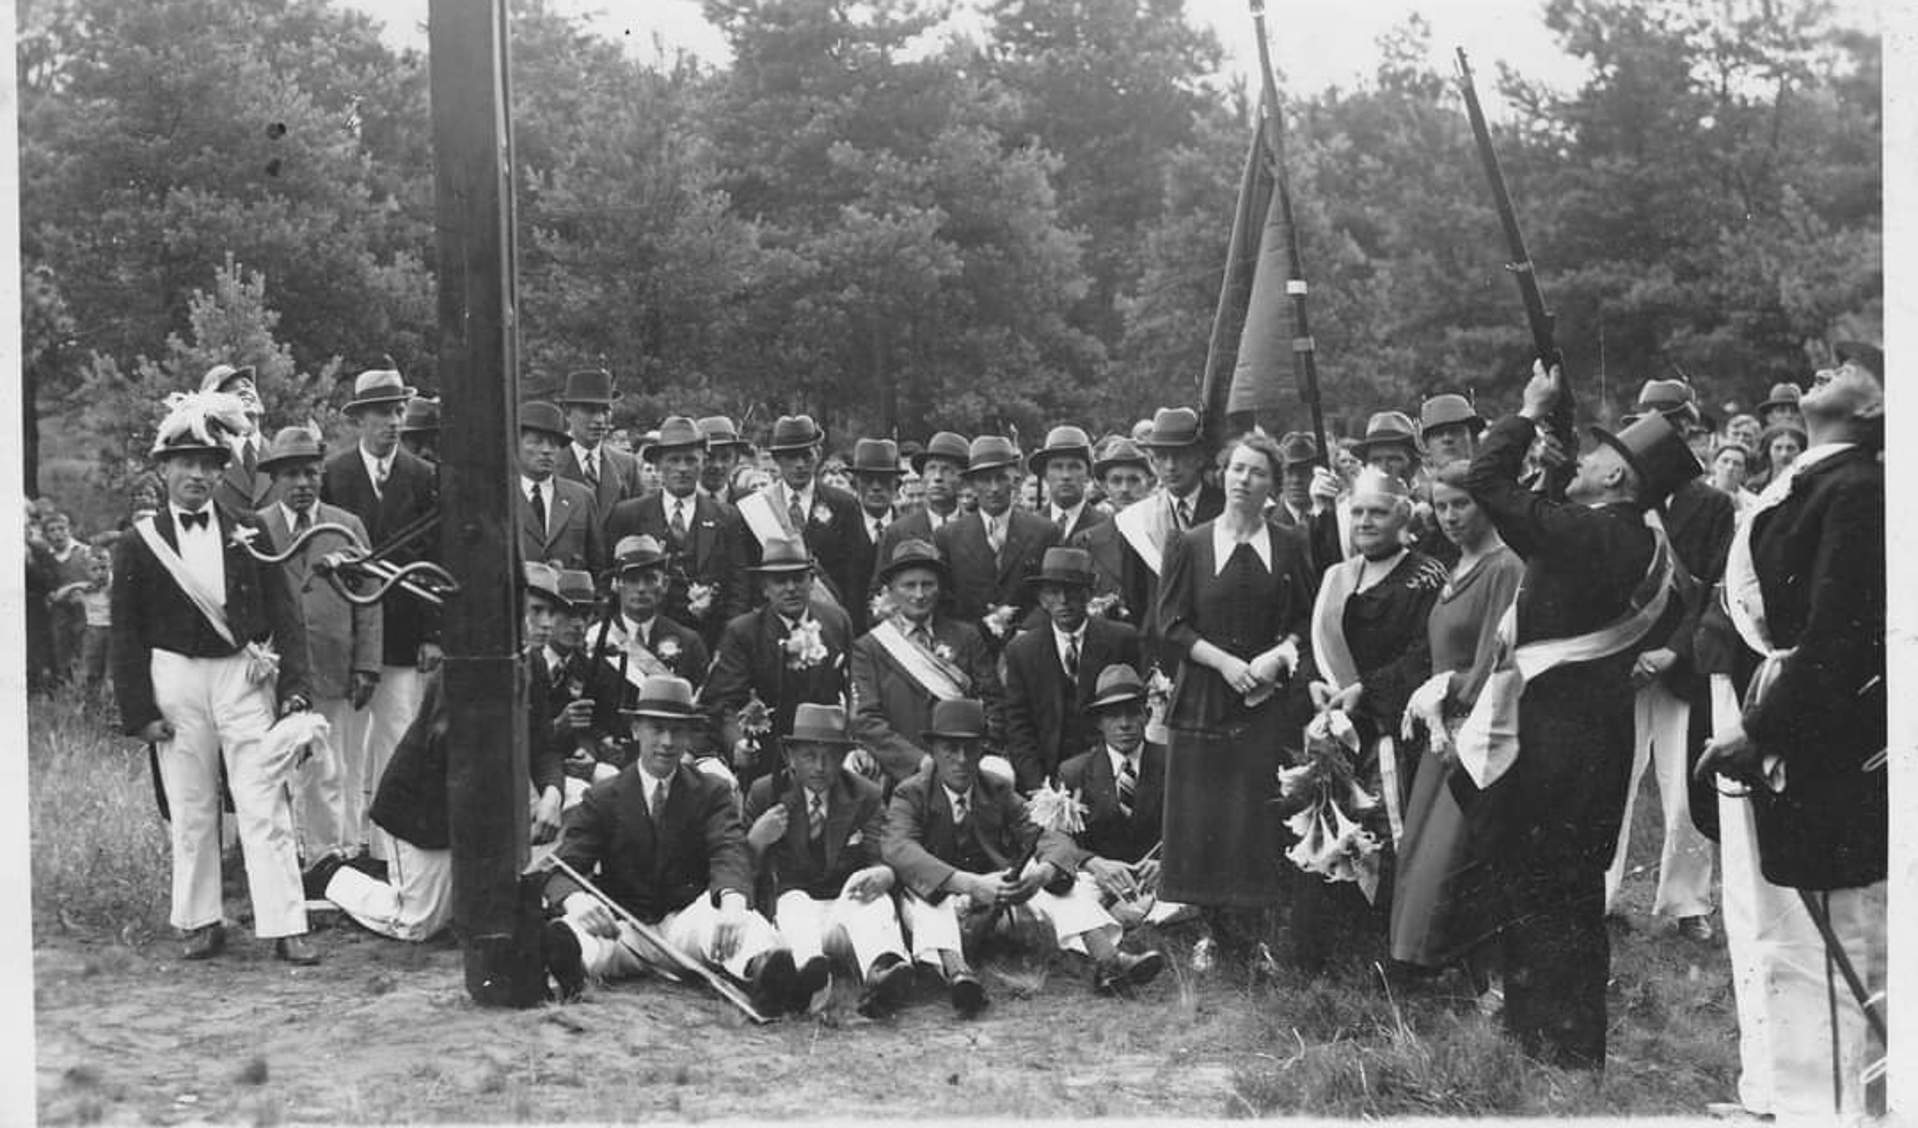 Historische foto van schuttersvereniging St. Märten uit 1936.